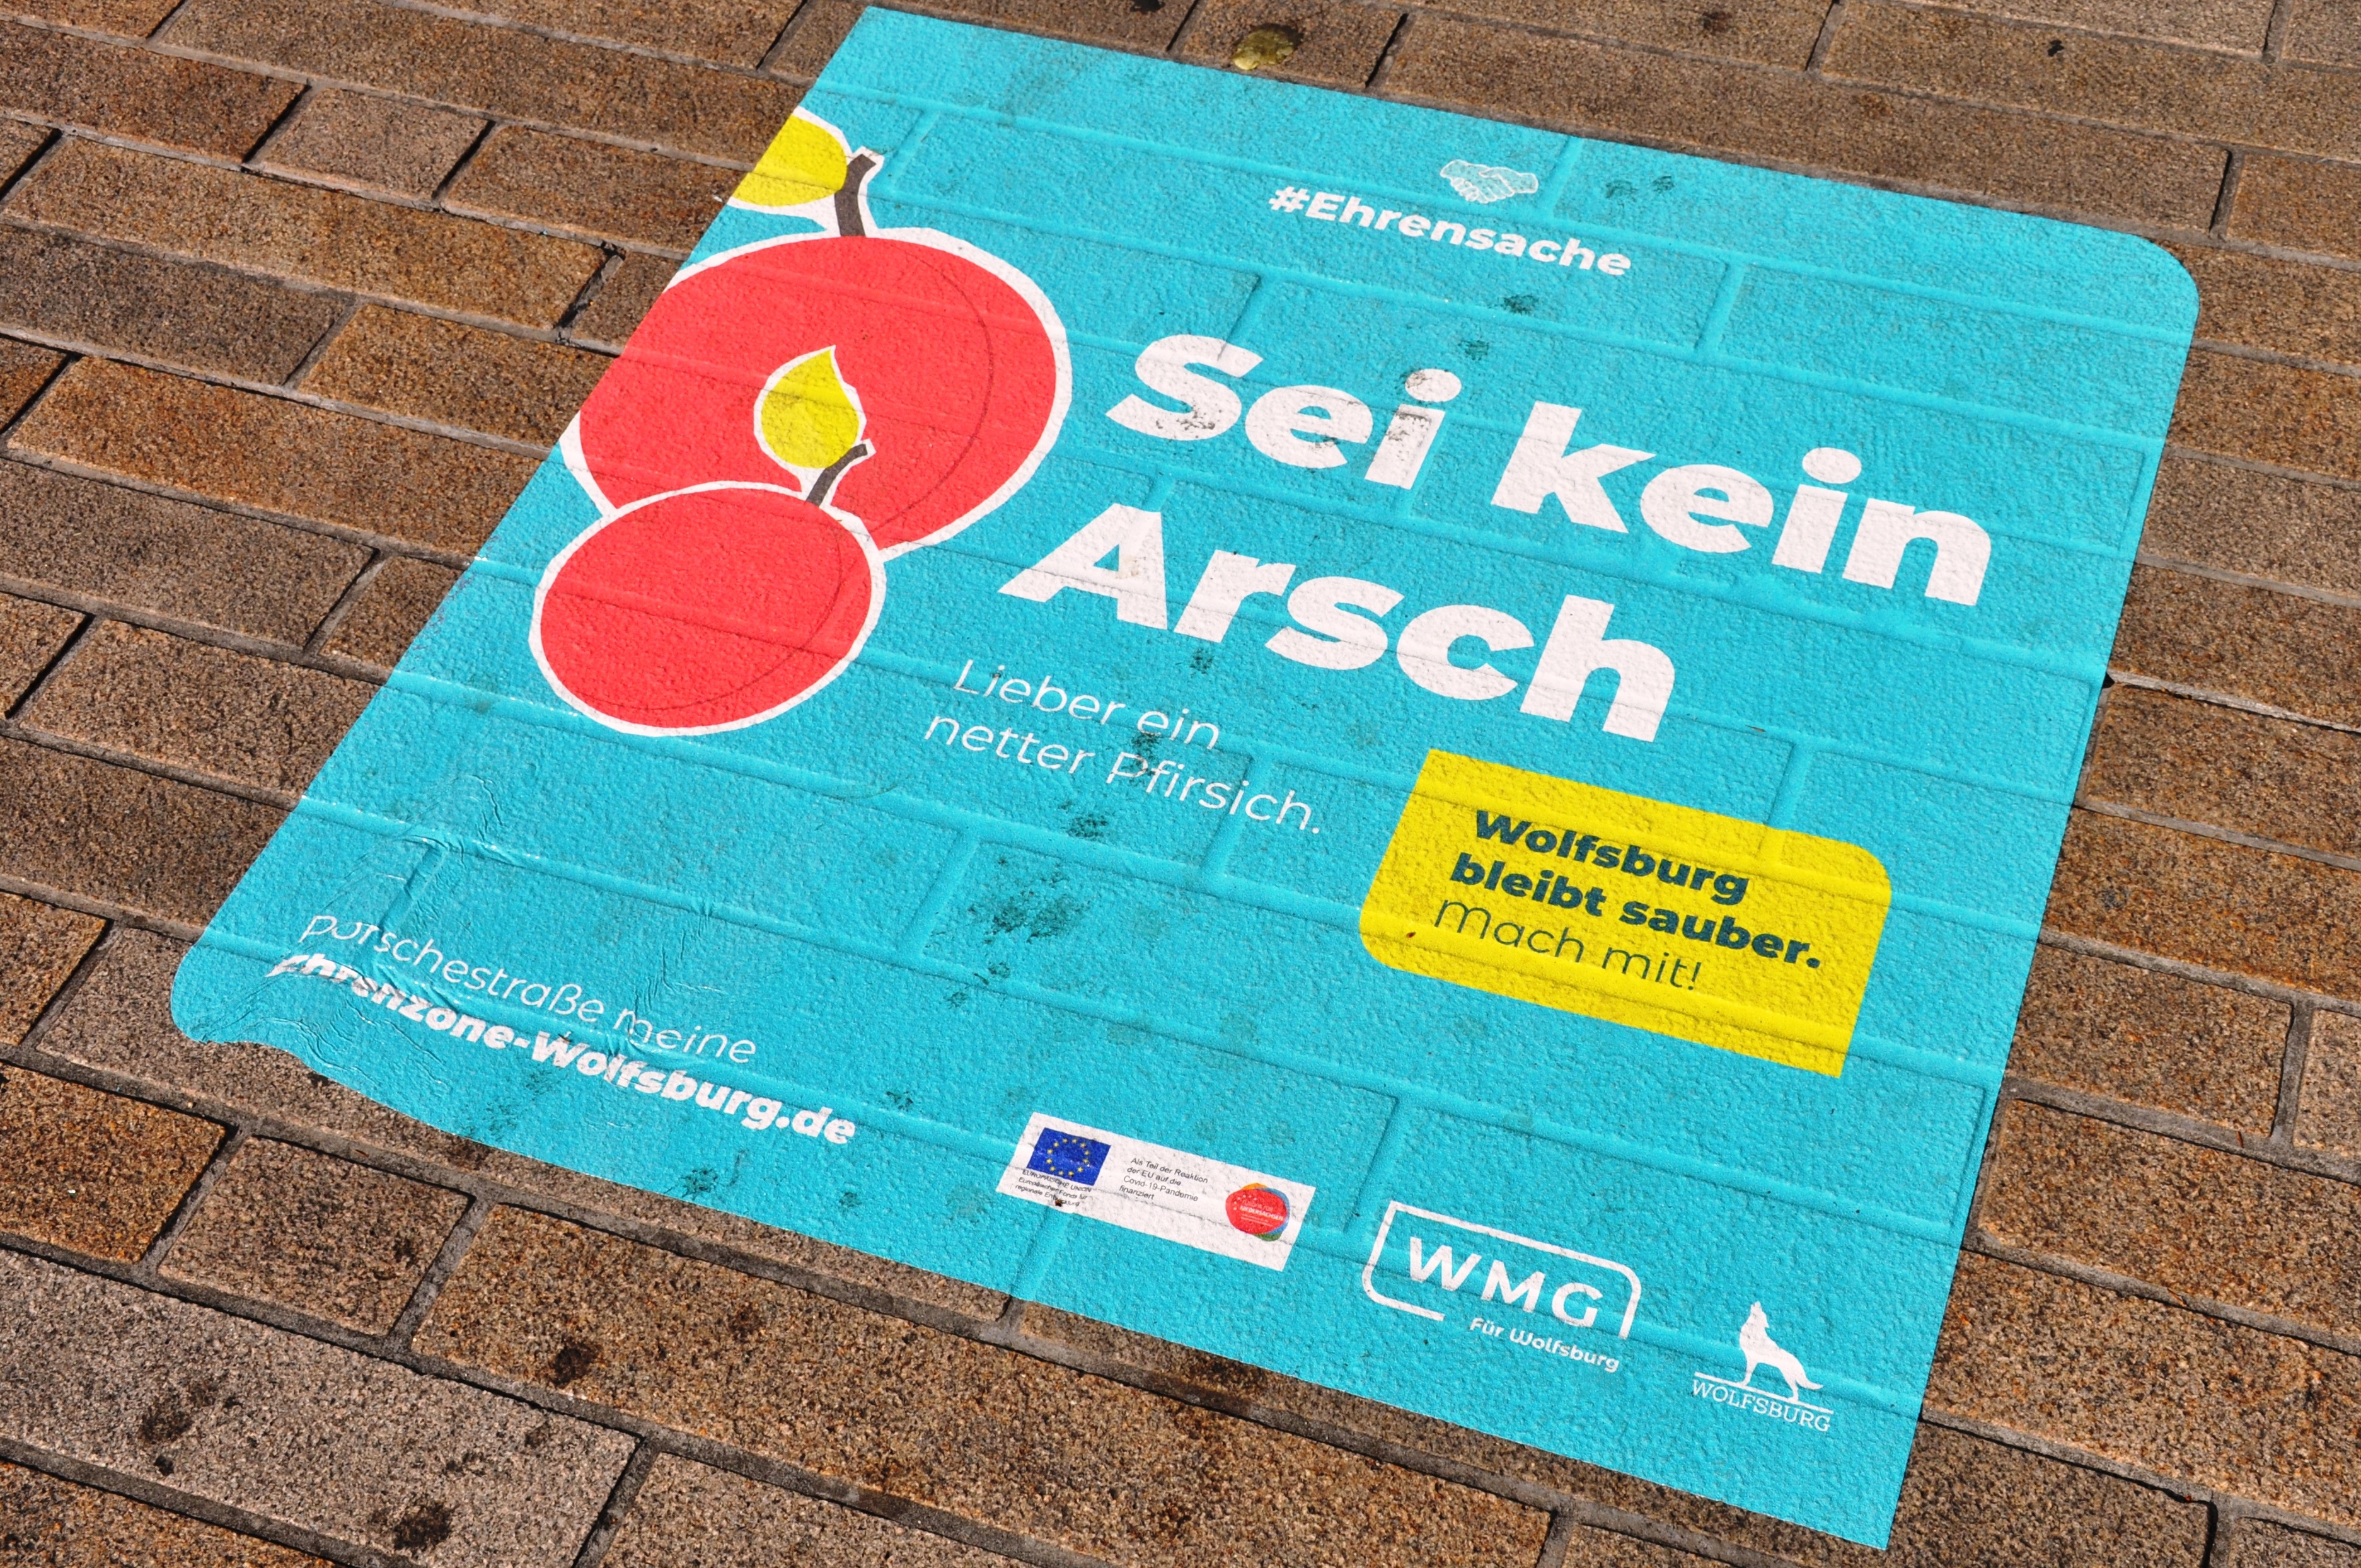 Kampagne zur Sauberkeit und Sicherheit in der Innenstadt "Ehrensache" - Aufkleber "Sei kein Arsch"